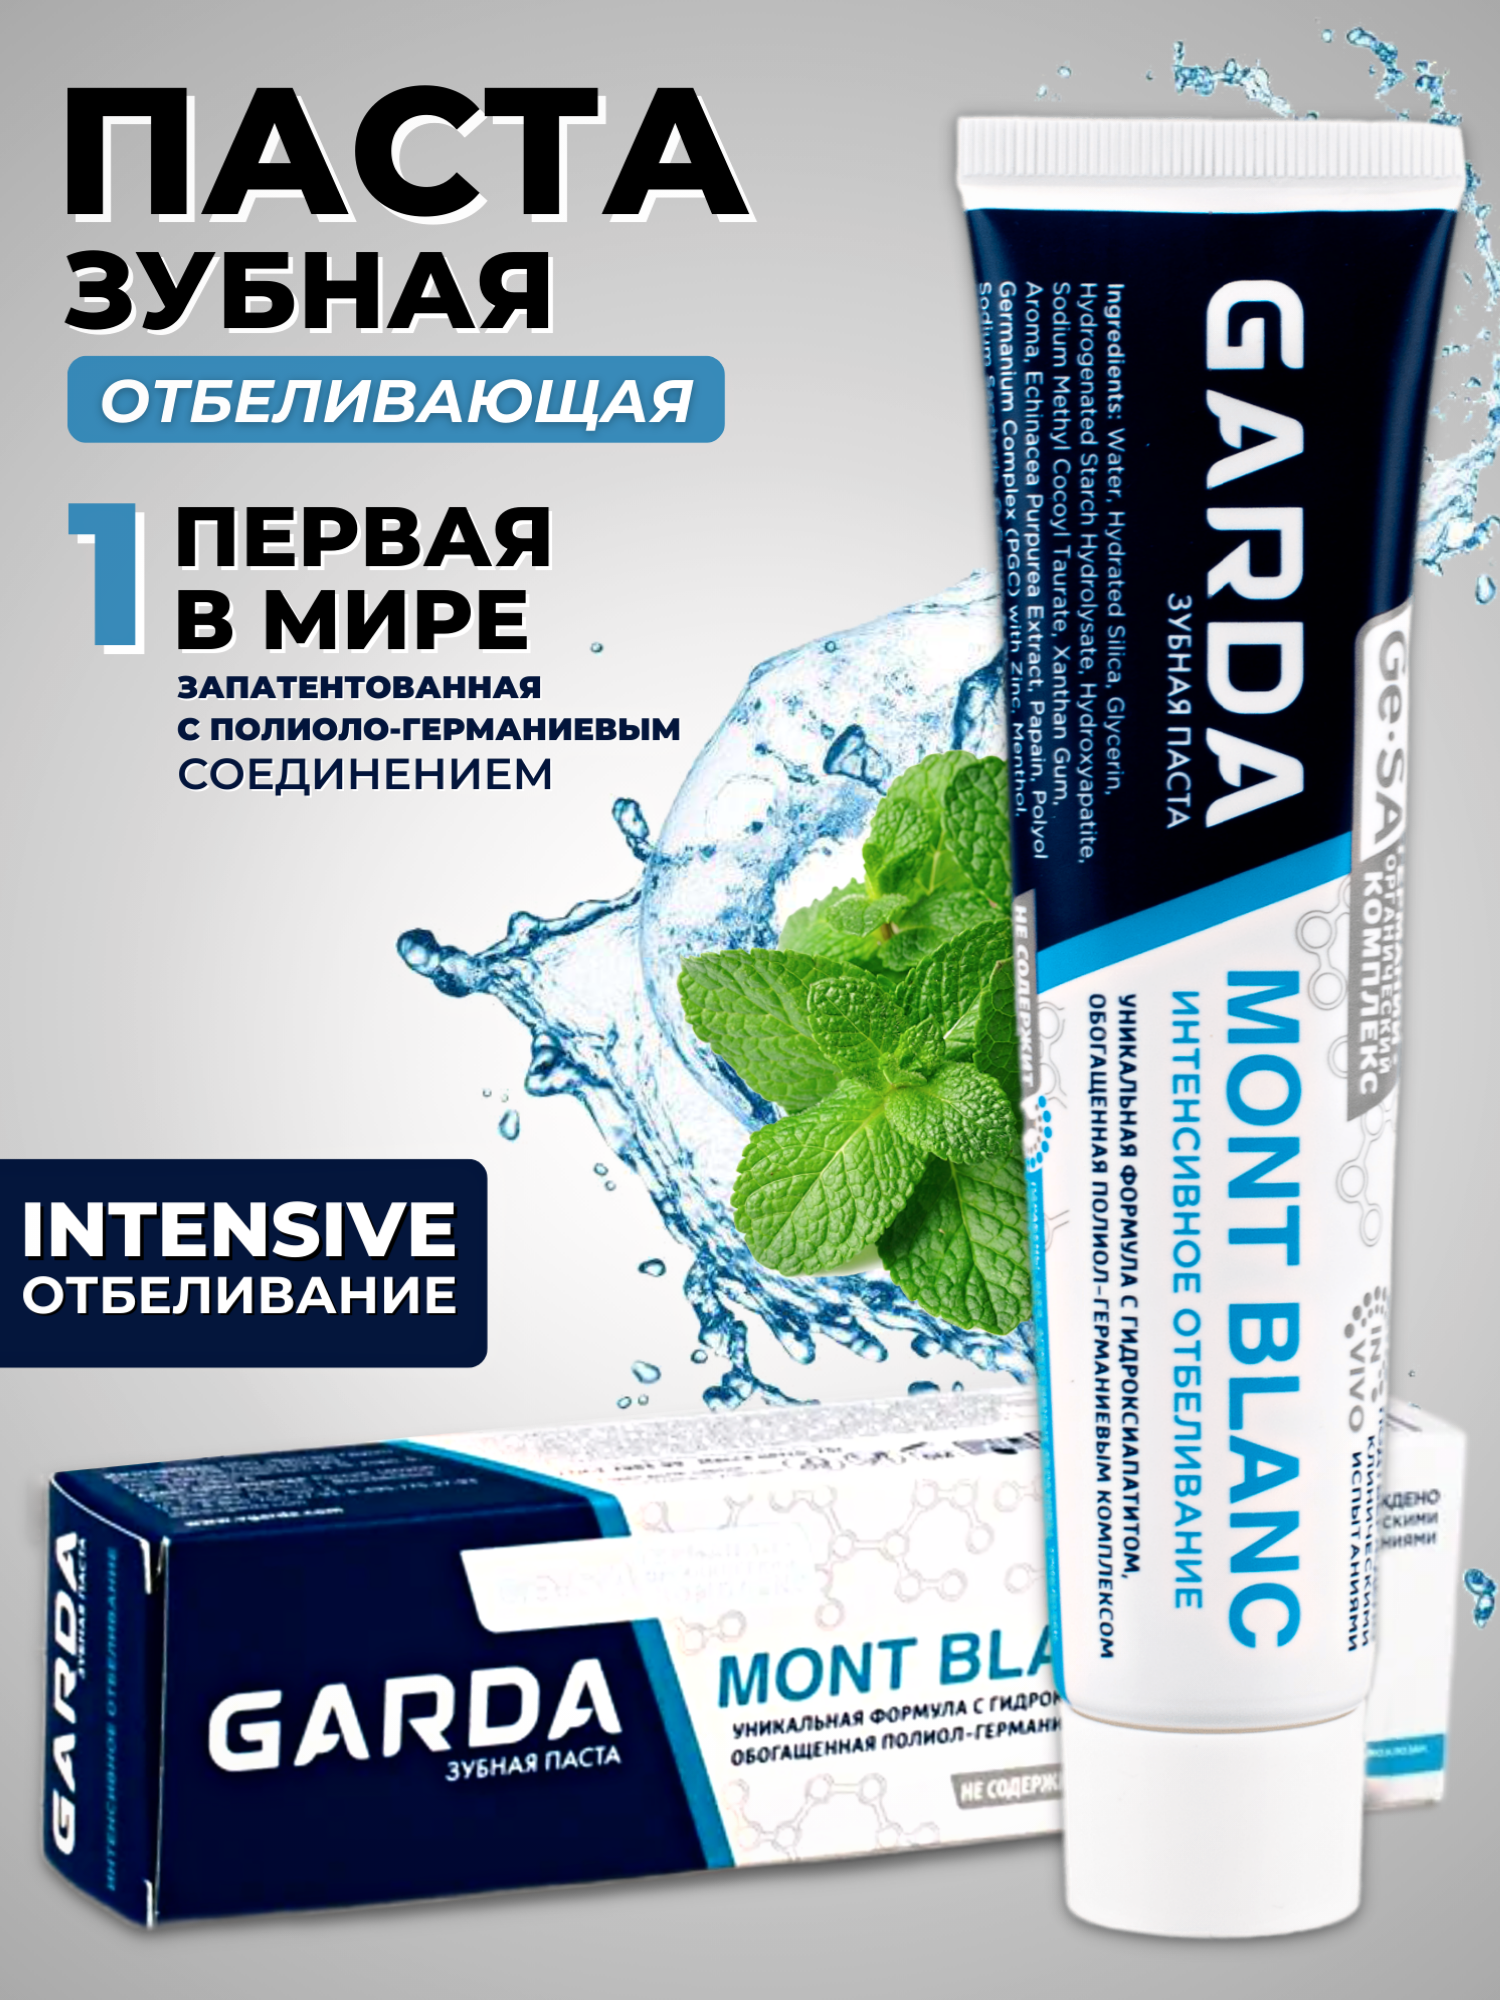 Зубная паста GARDA MONT BLANC Интенсивное отбеливание и реминерализация 75 гр.